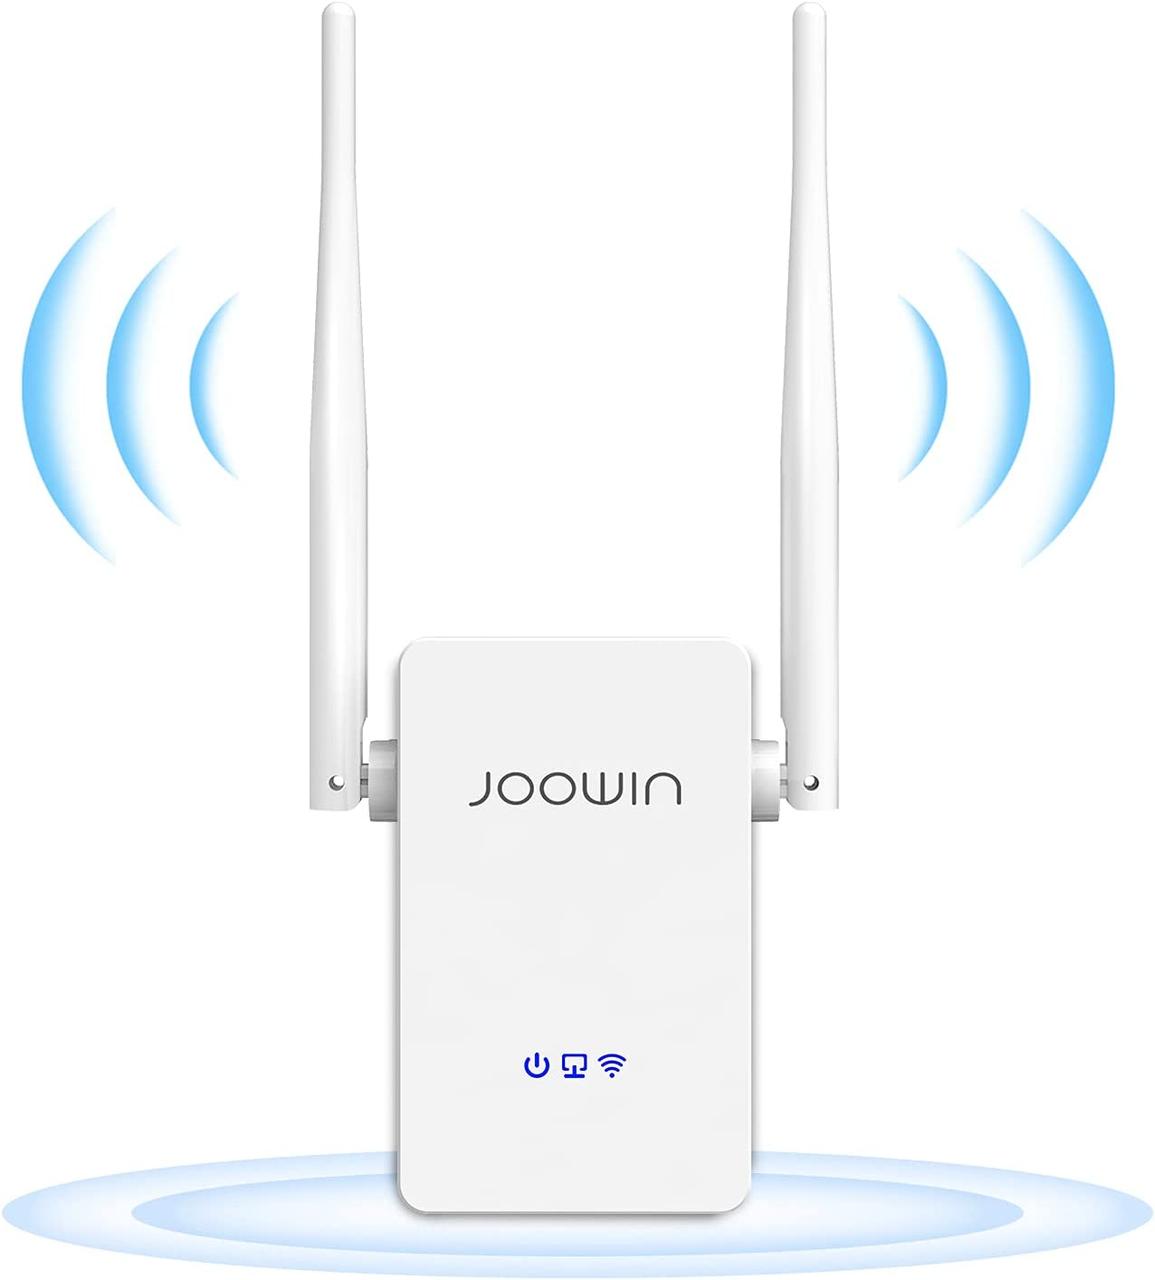 Повторювач JOOWIN WiFi, підсилювач WiFi 300 Мбіт/с, повторювач WiFi 2,4 ГГц